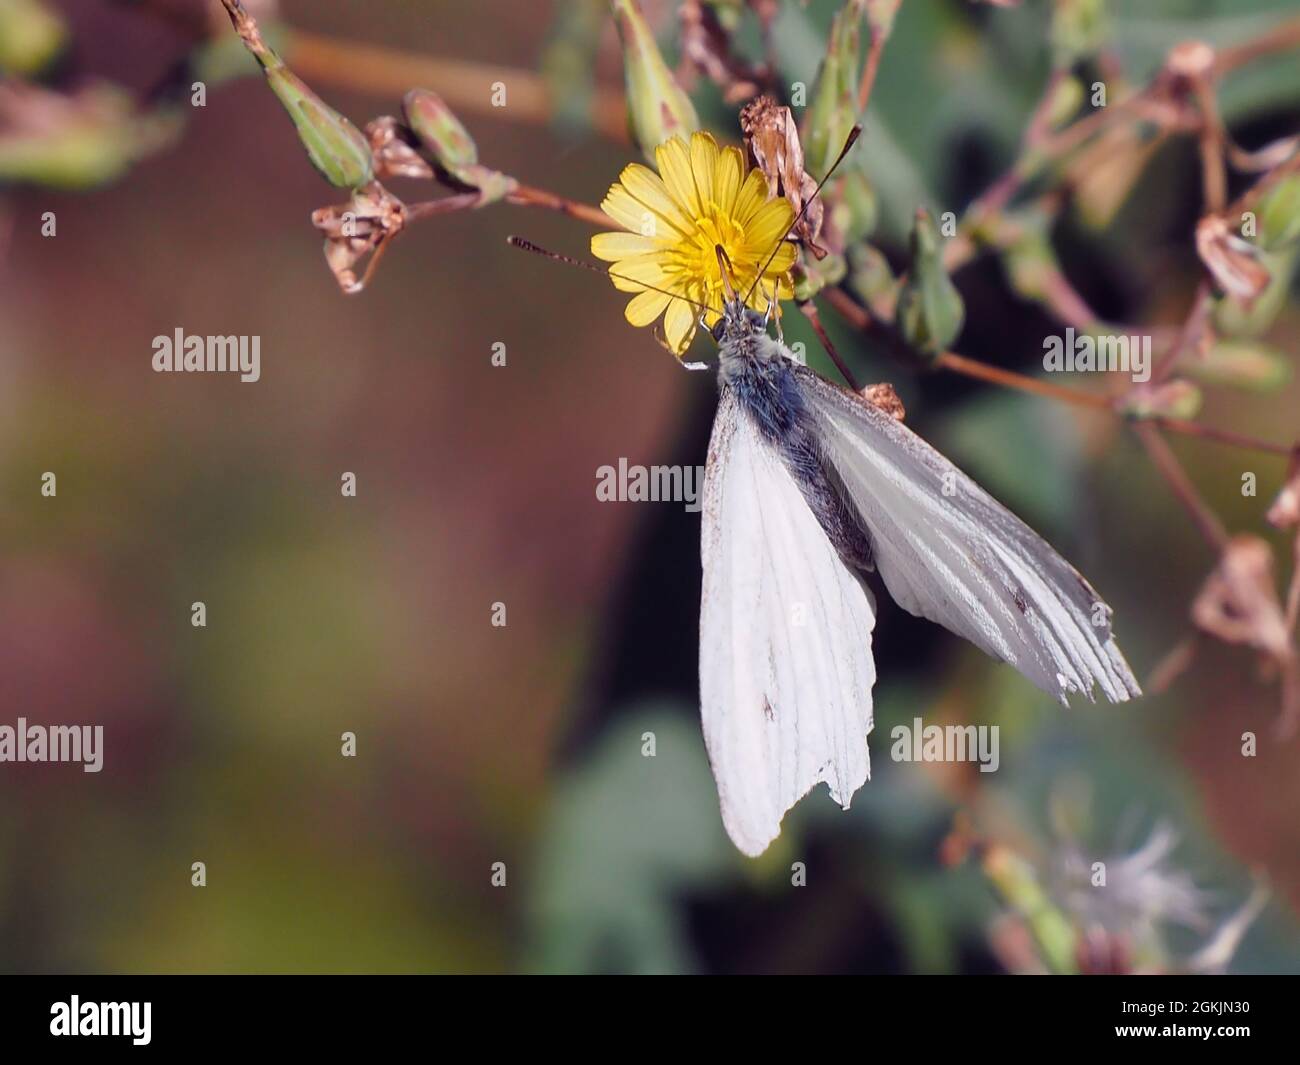 Primer plano de una mariposa blanca de col que recoge néctar de la flor amarilla en una planta de lechuga espinosa con un fondo borroso. Foto de stock